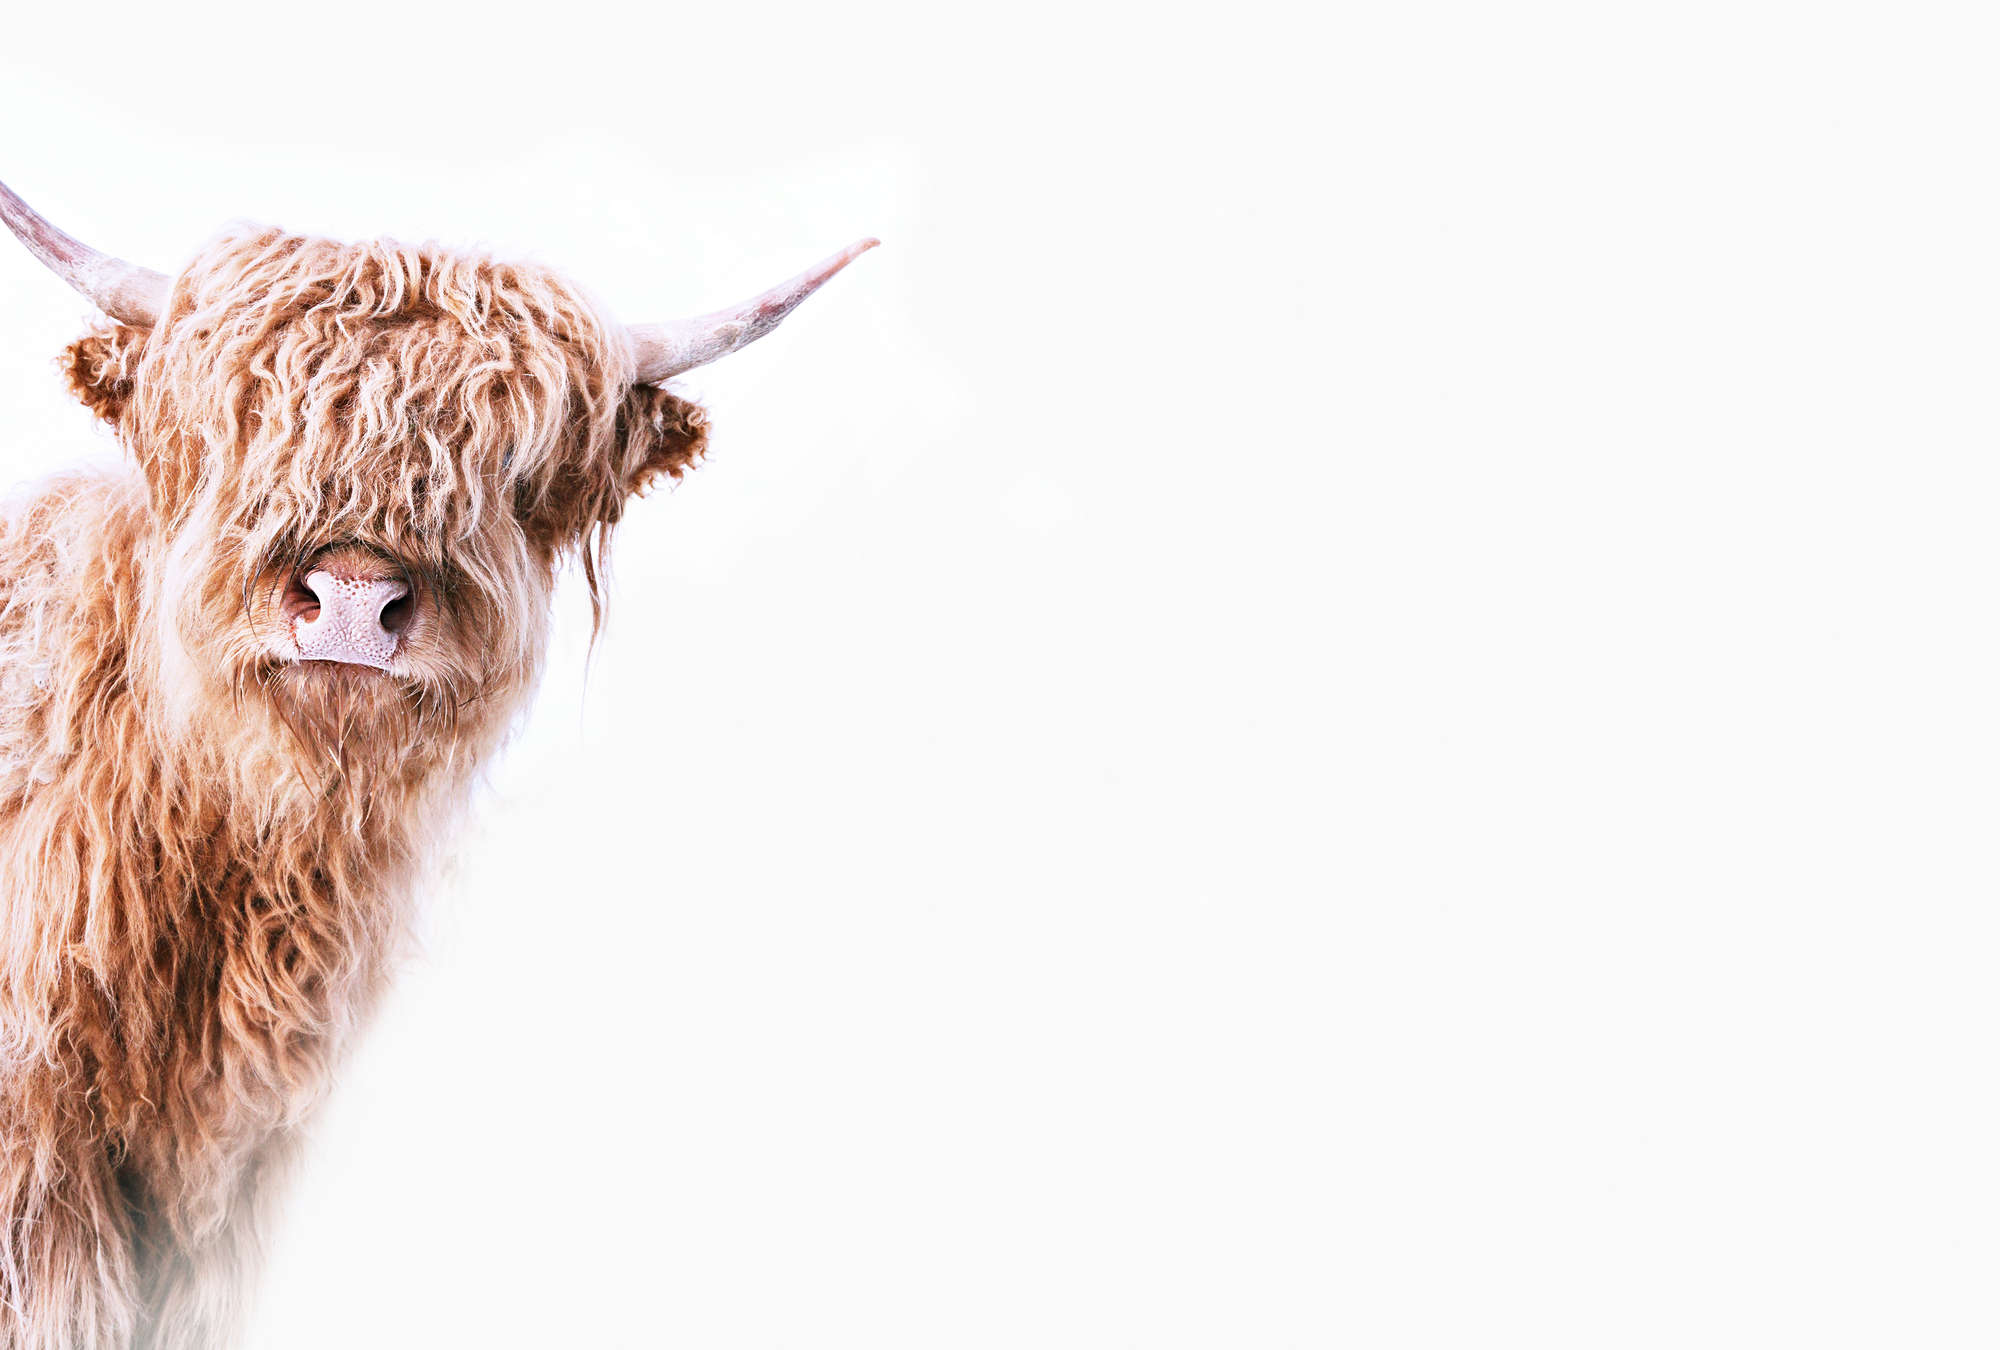             Papier peint animalier avec un bovin Highland au look hirsute
        